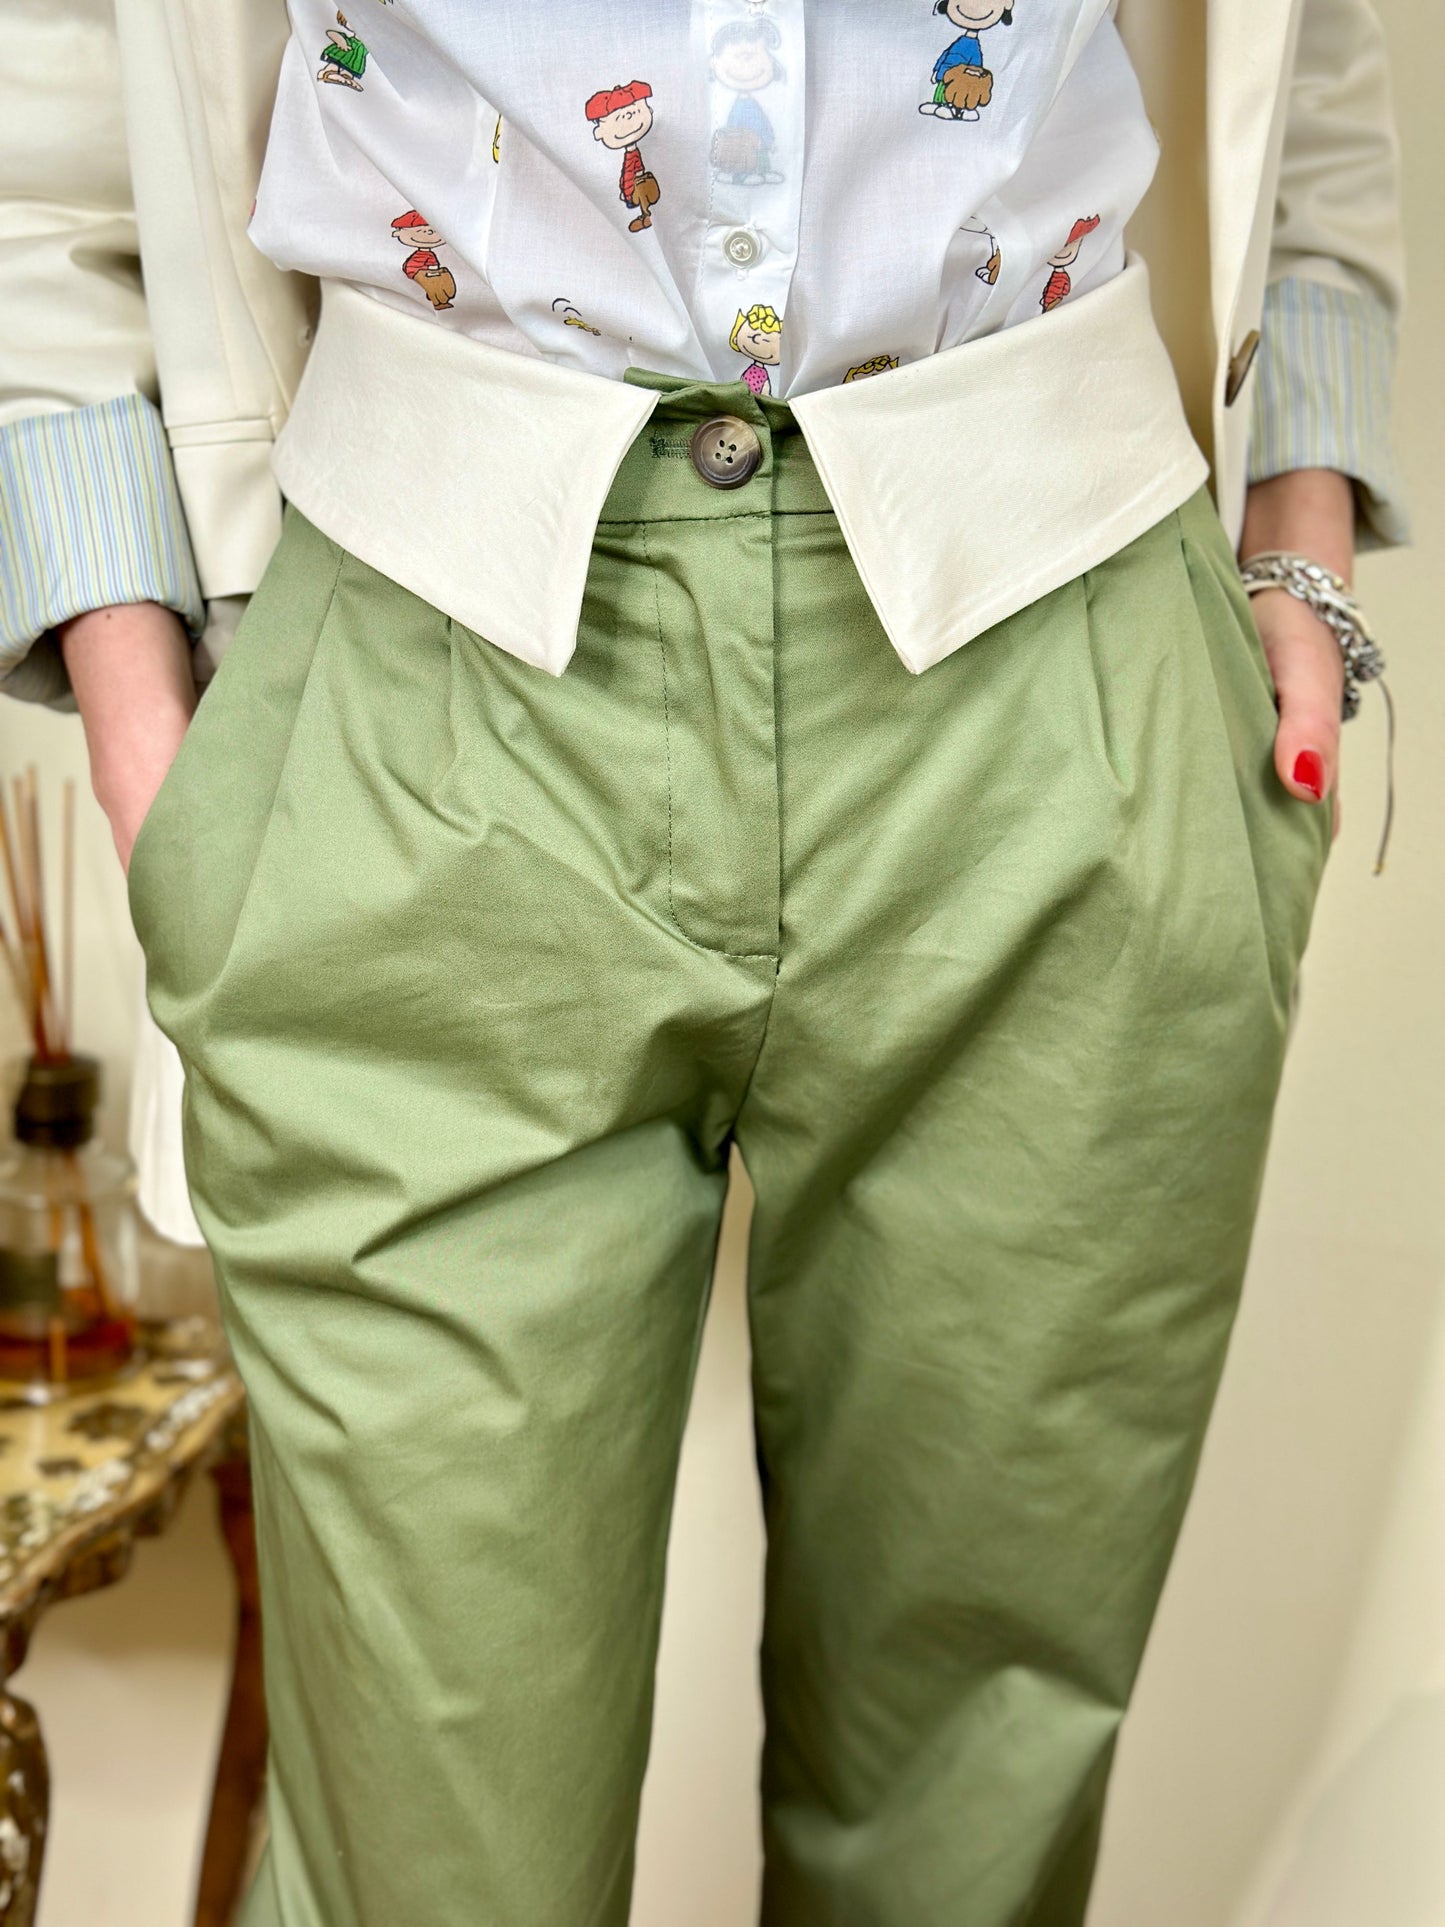 D'Elle pantalone con risvolto in vita (disponibile verde e cammello)